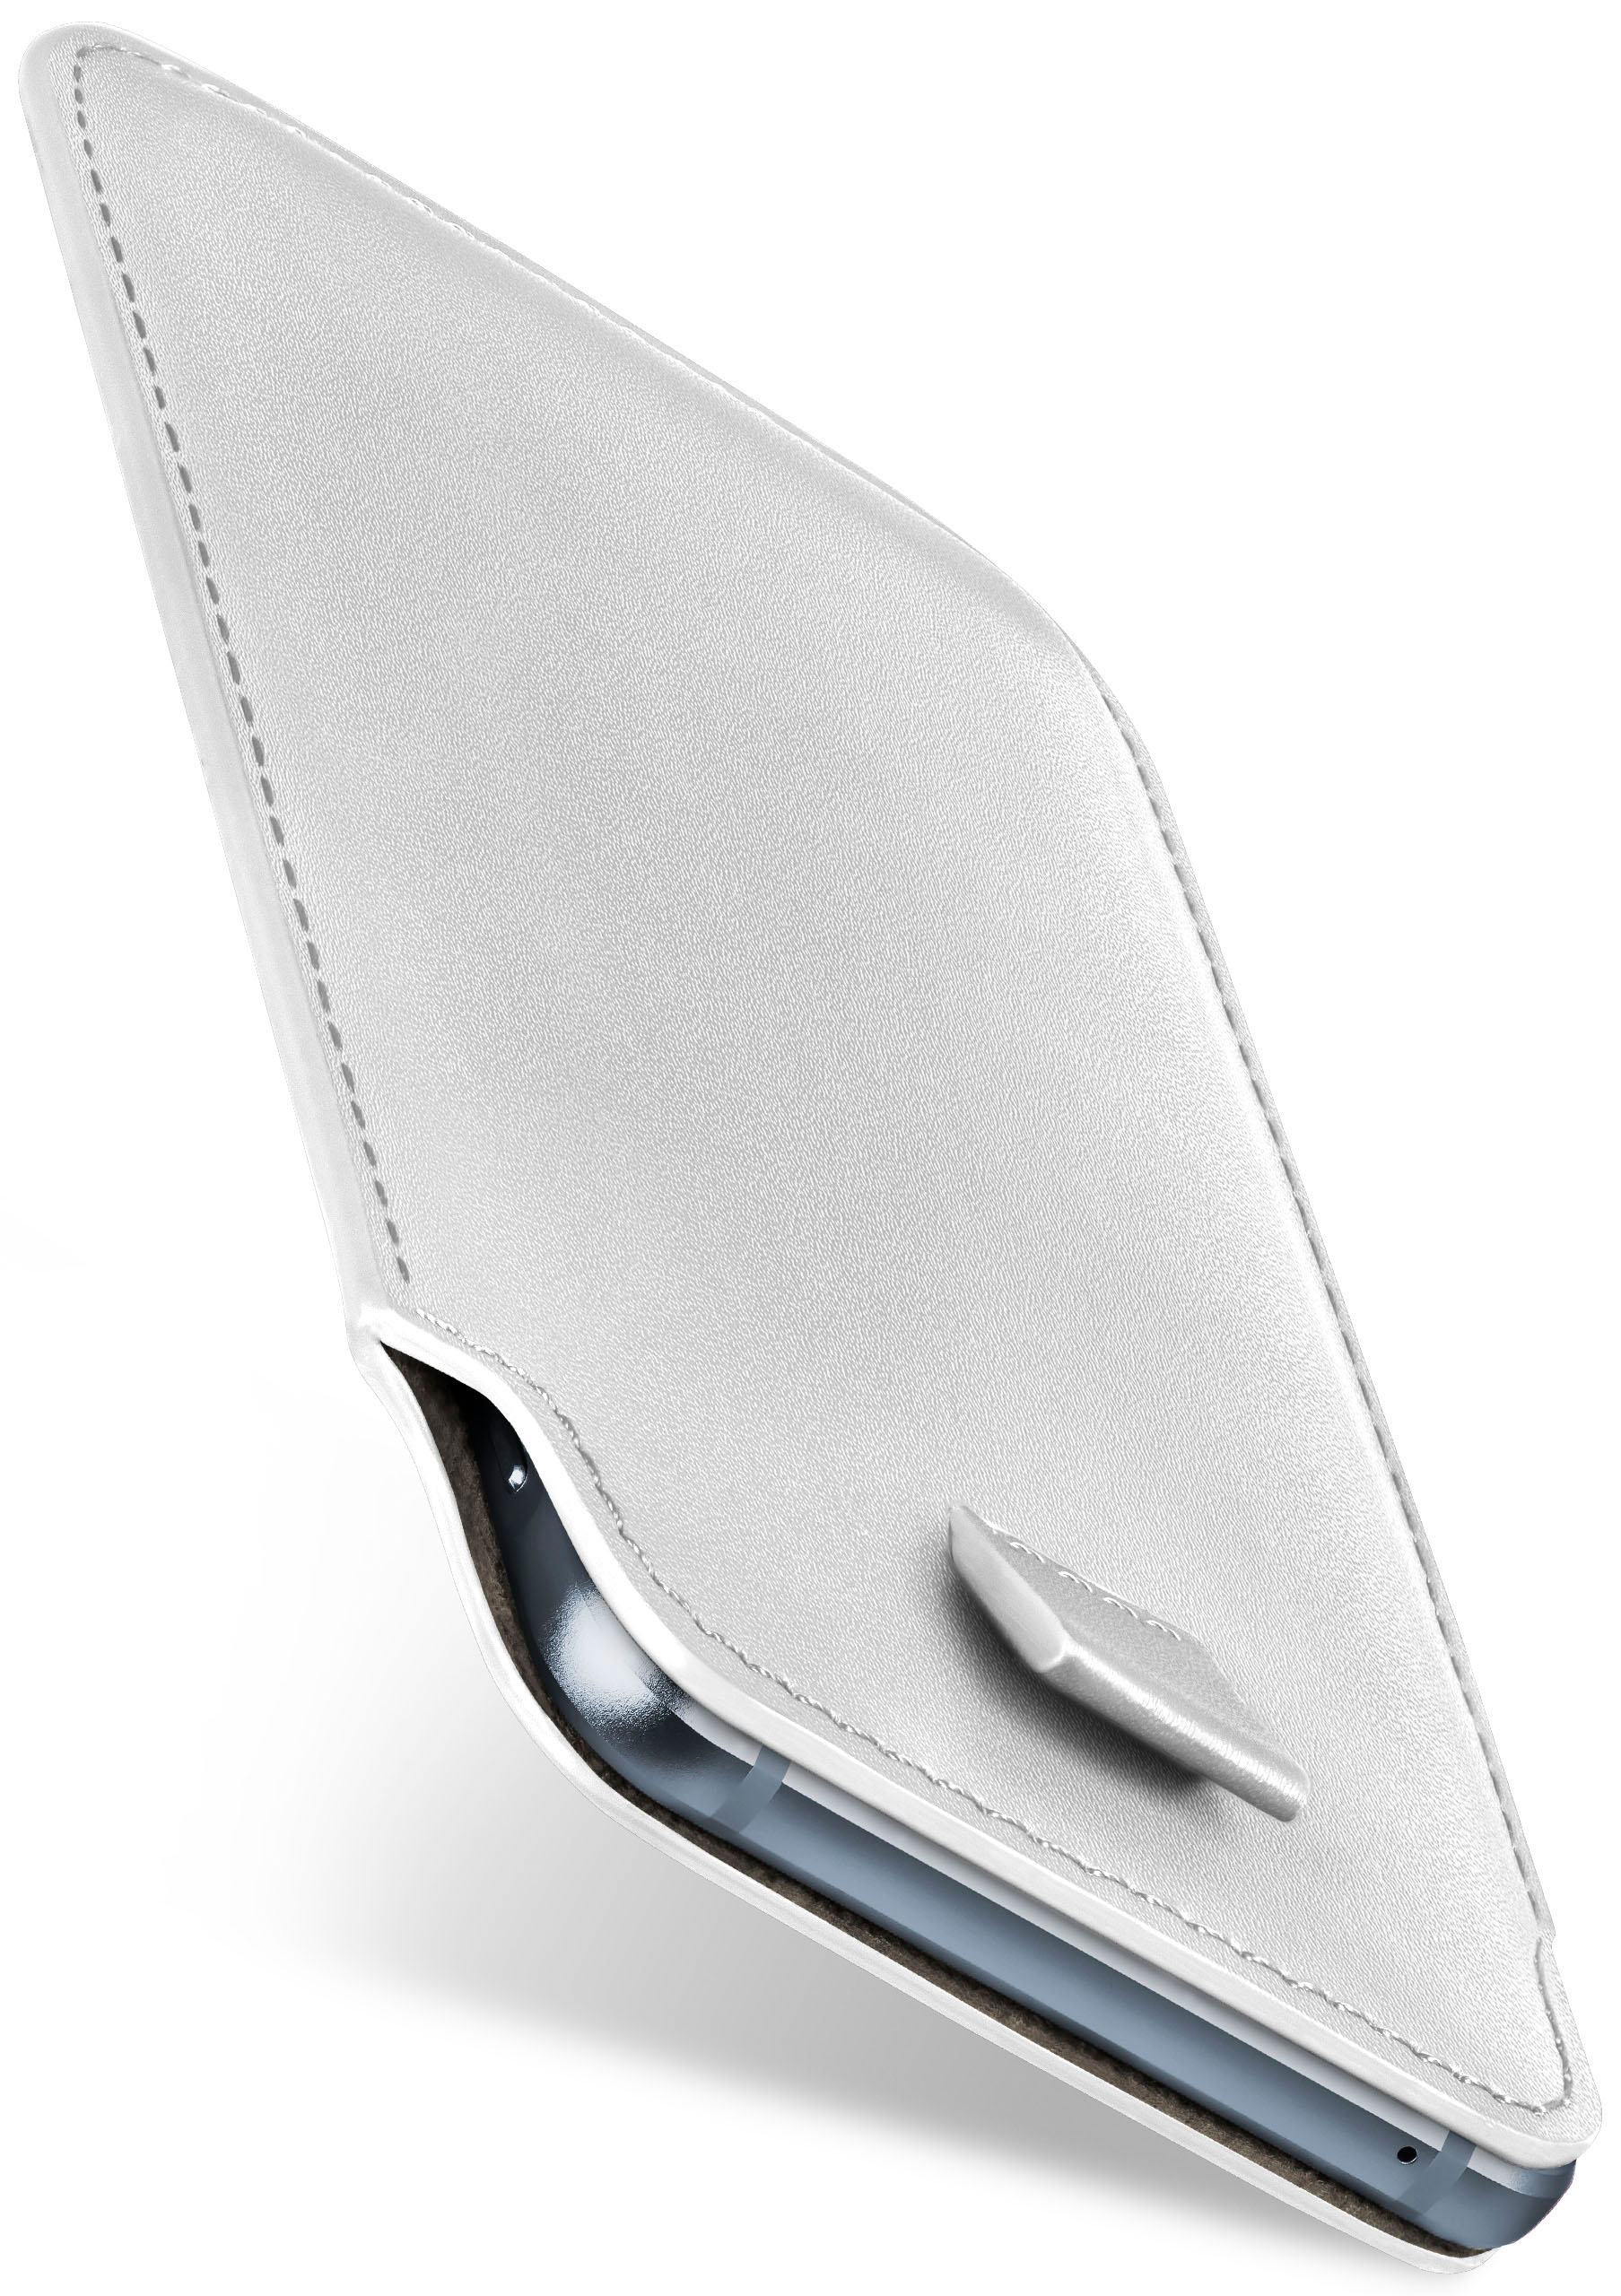 Nokia, Shiny-White Slide Full Cover, Case, 230, MOEX